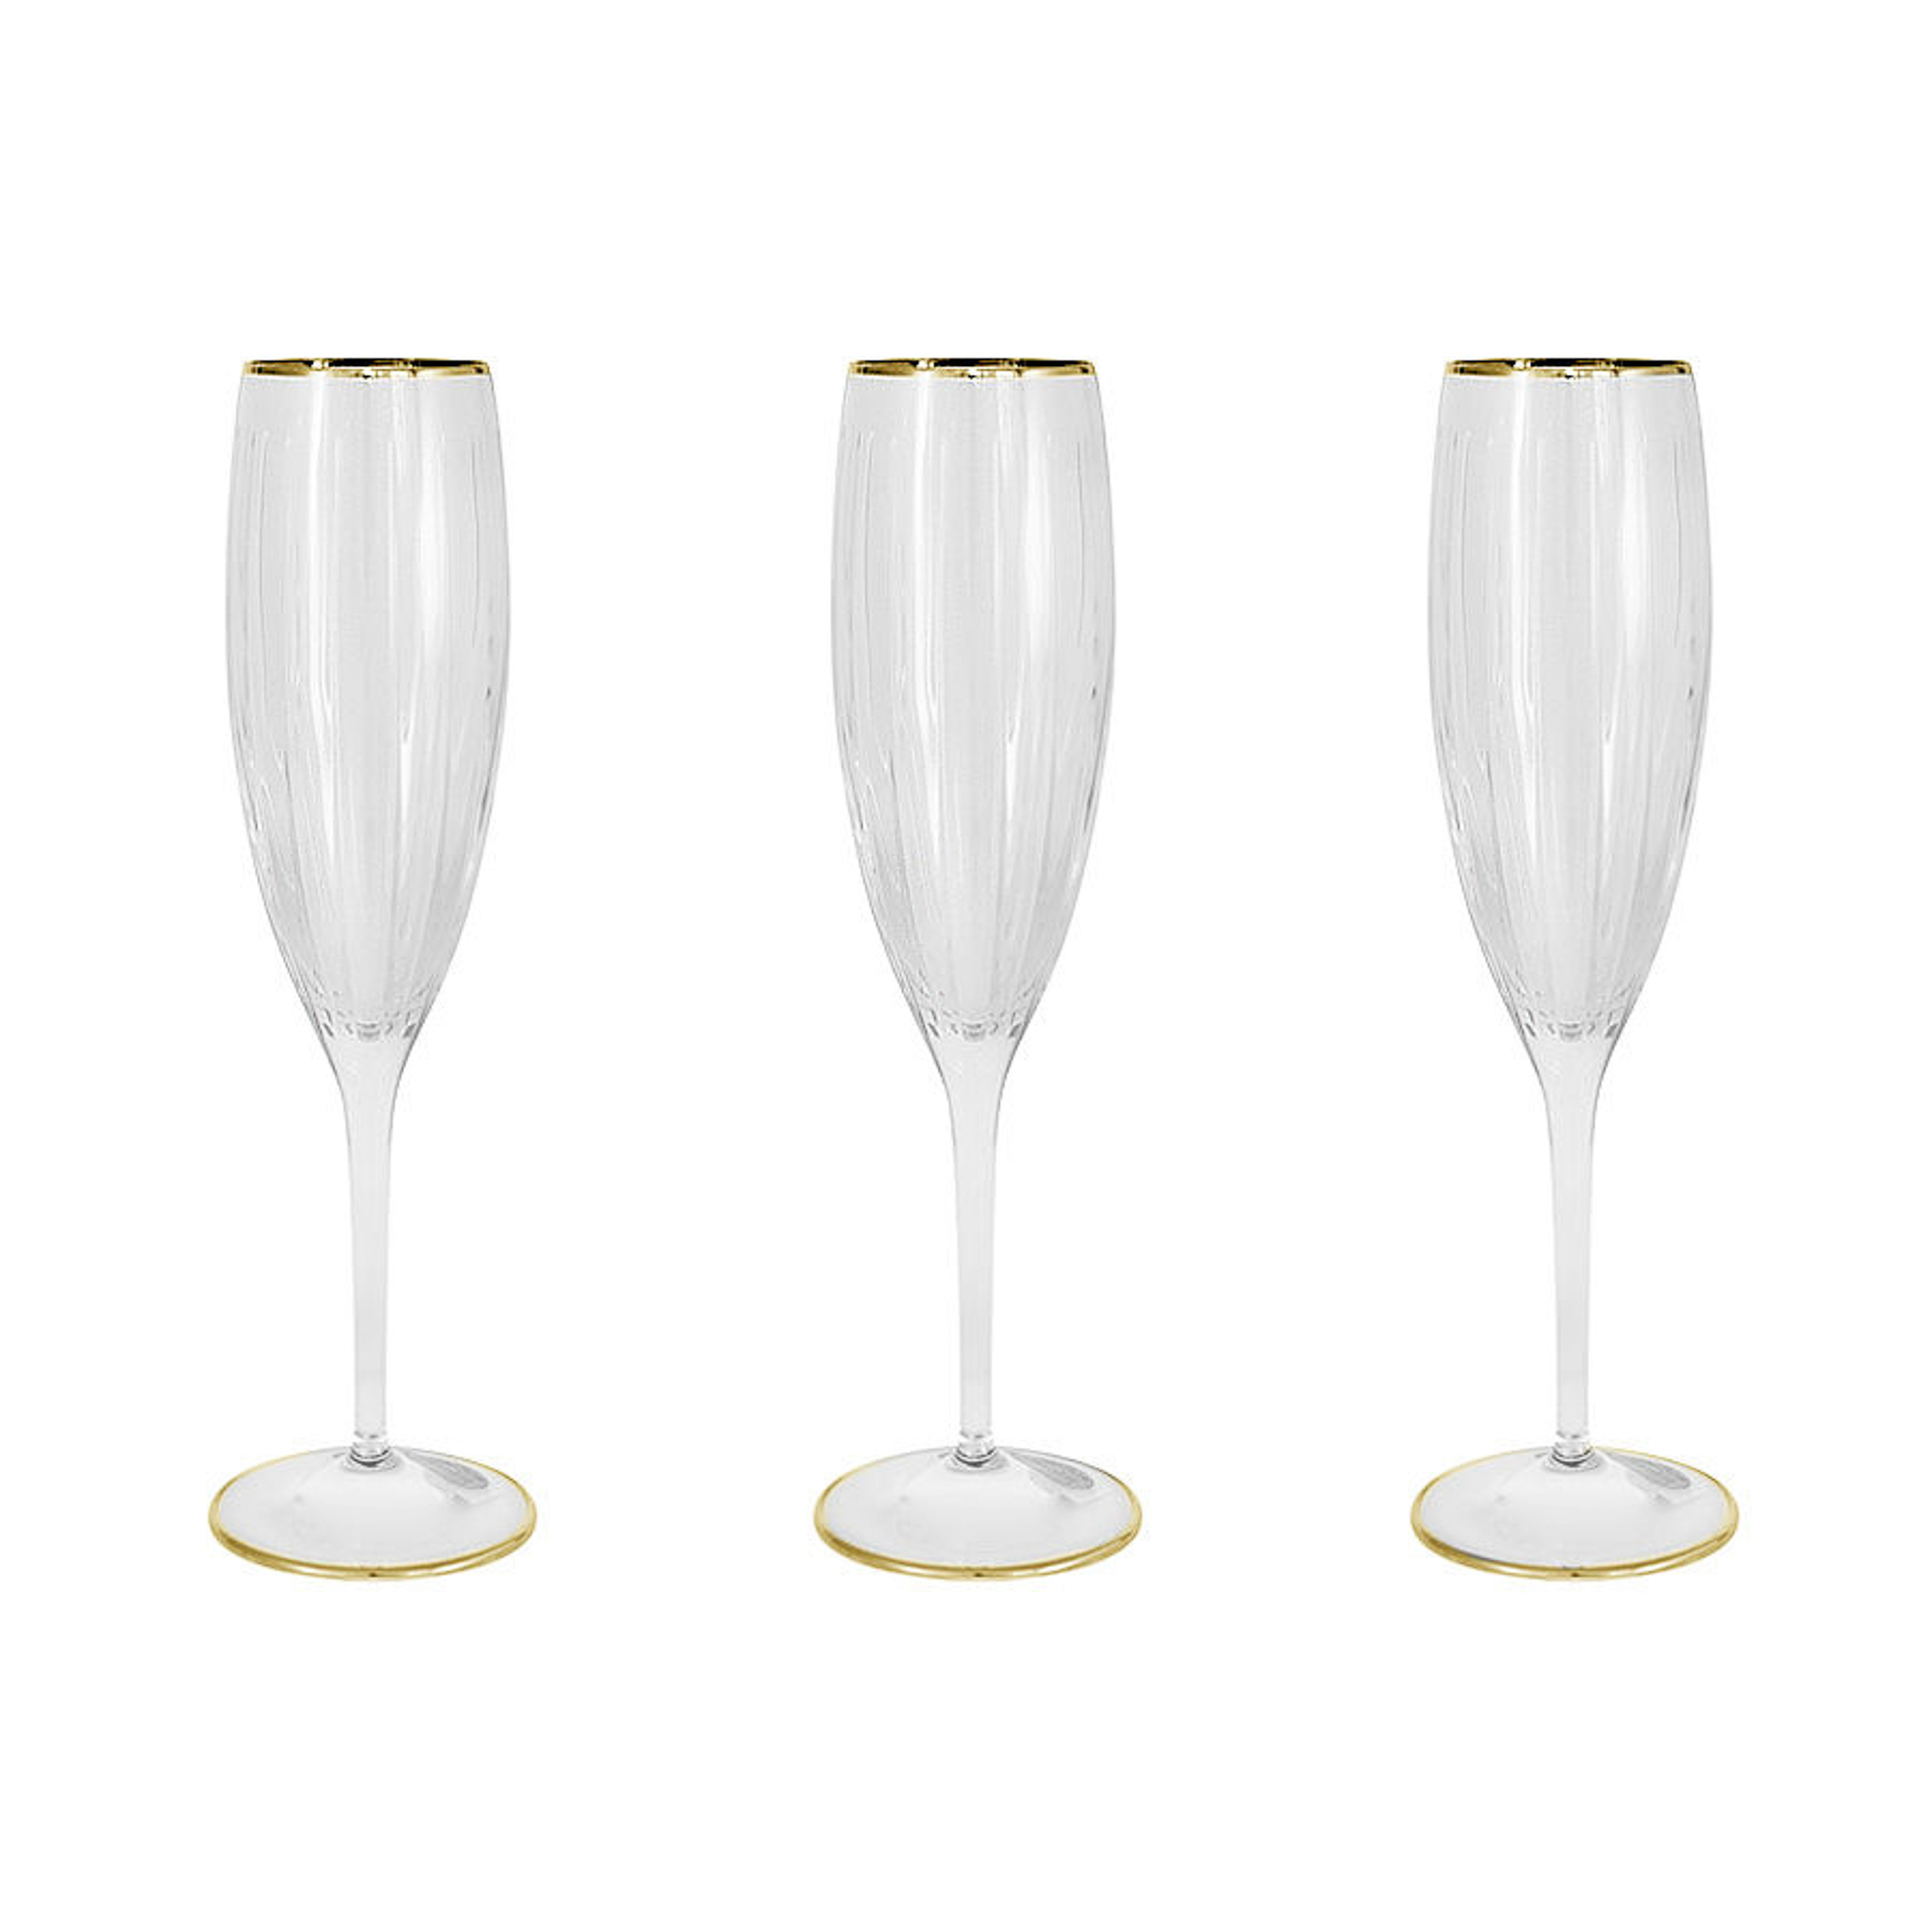 Набор фужеров Same Пиза золото для шампанского 150 мл 6 шт, цвет прозрачный - фото 1